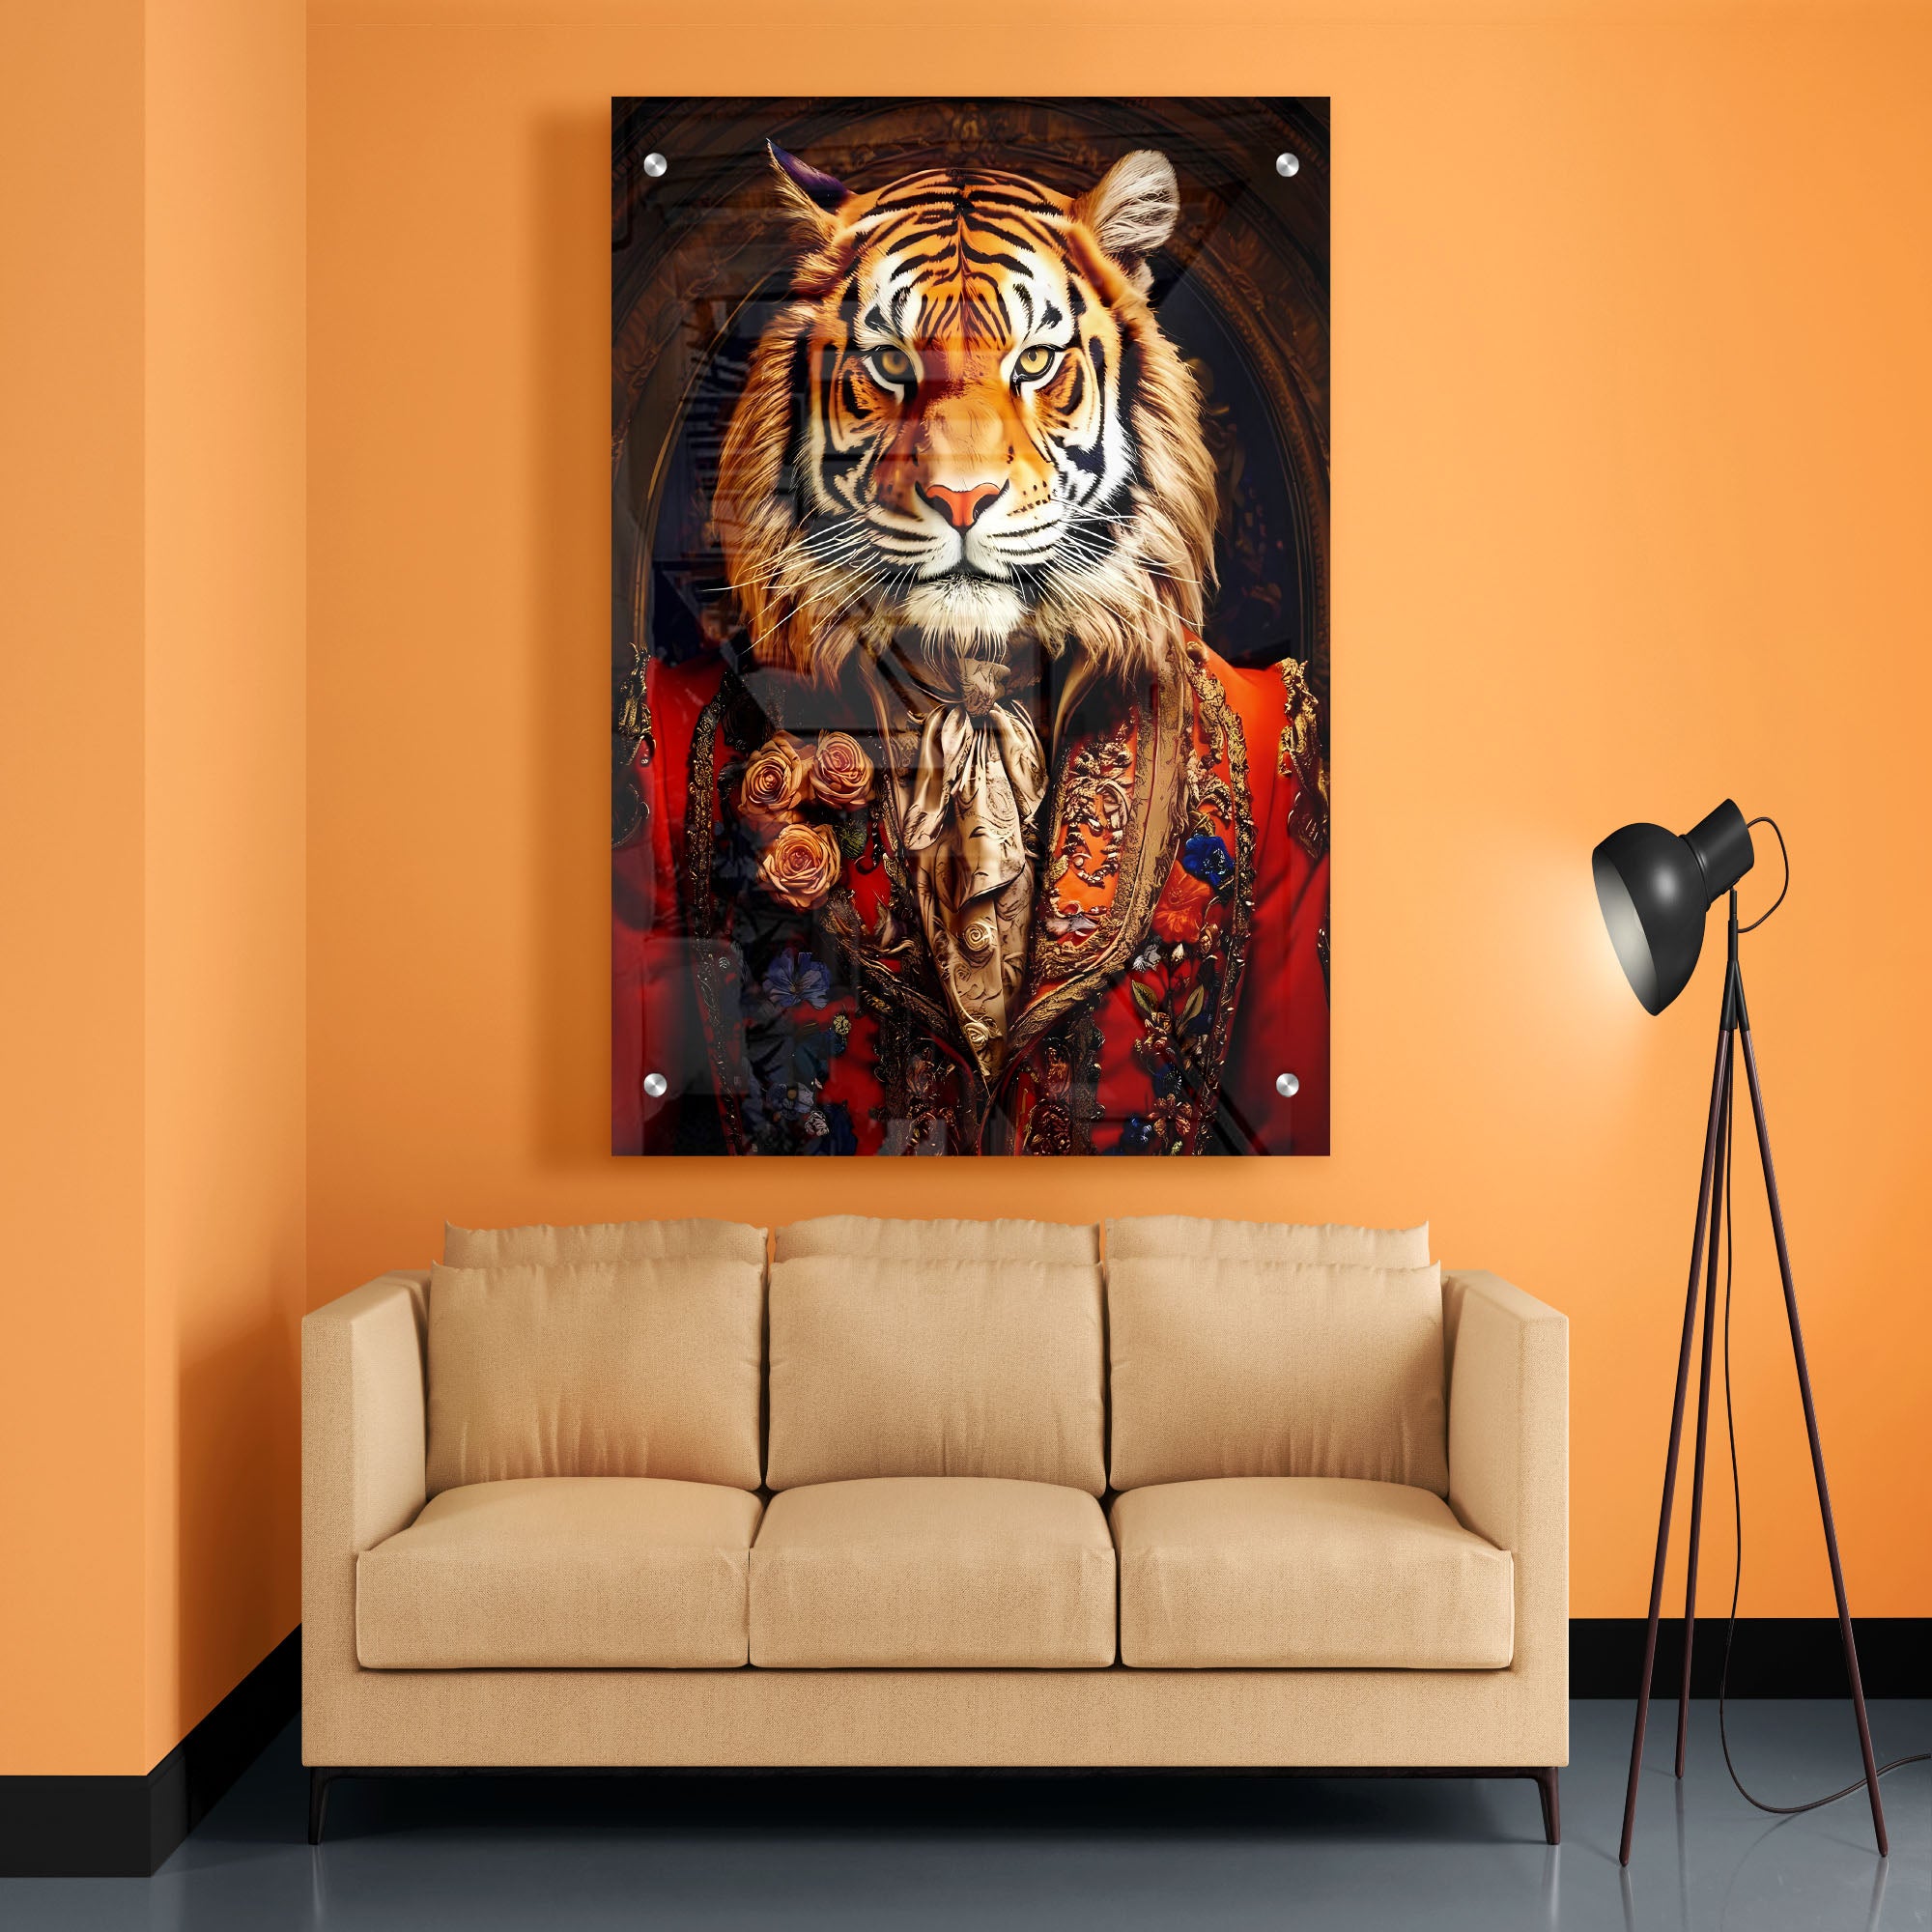 Tiger Royal Renaissance Acrylic Wall Painting